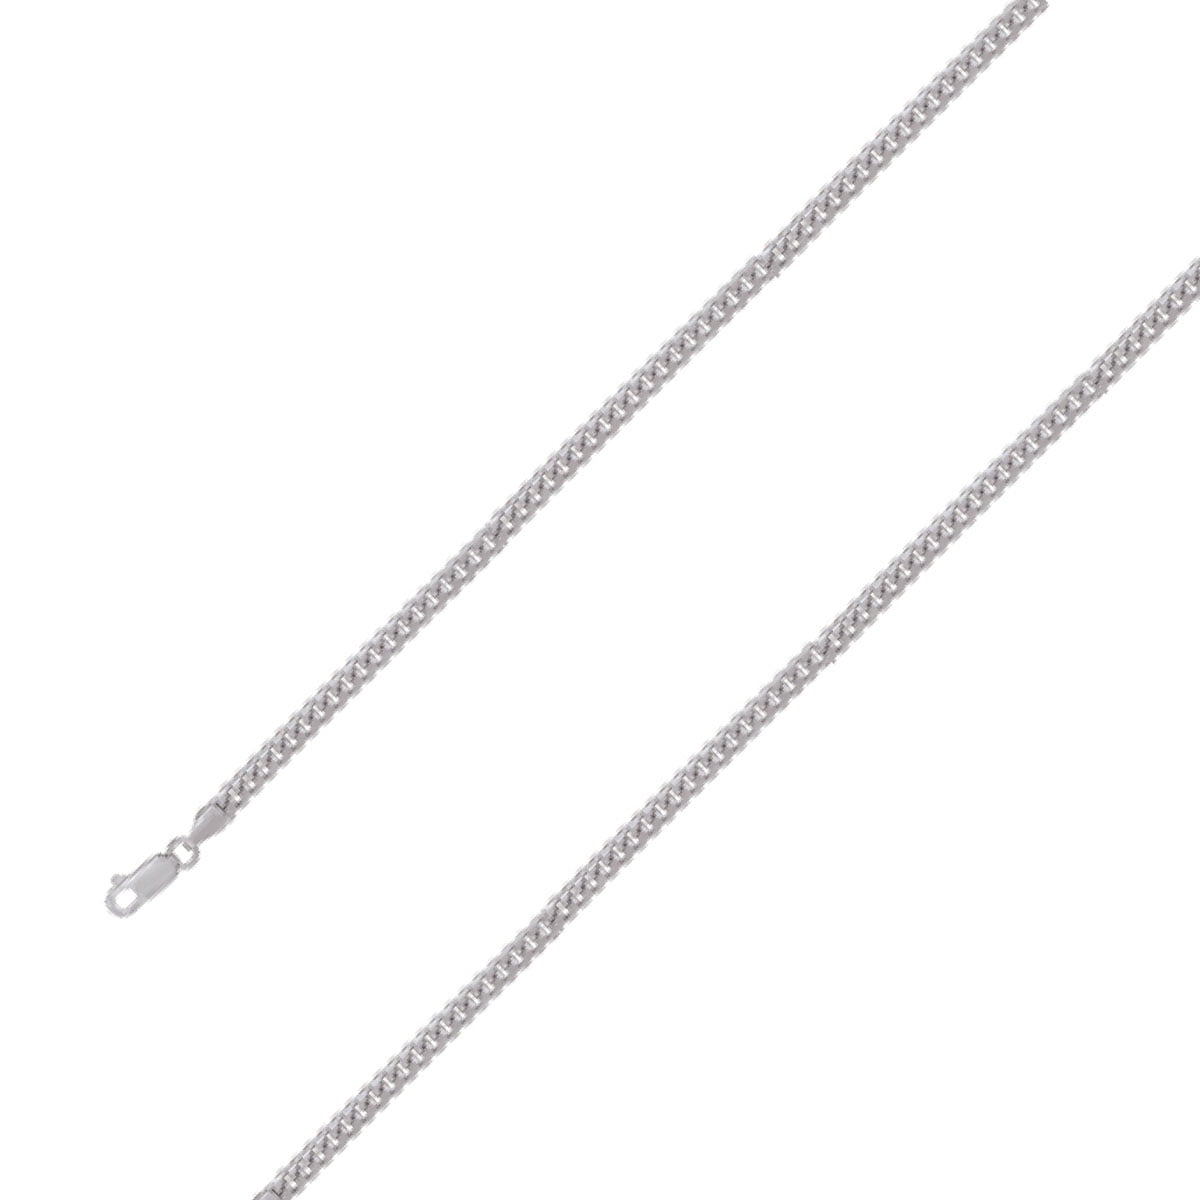 14k White Gold Finish Heavy 5mm Miami Cuban Link Chain Necklace Bracelet Set D 